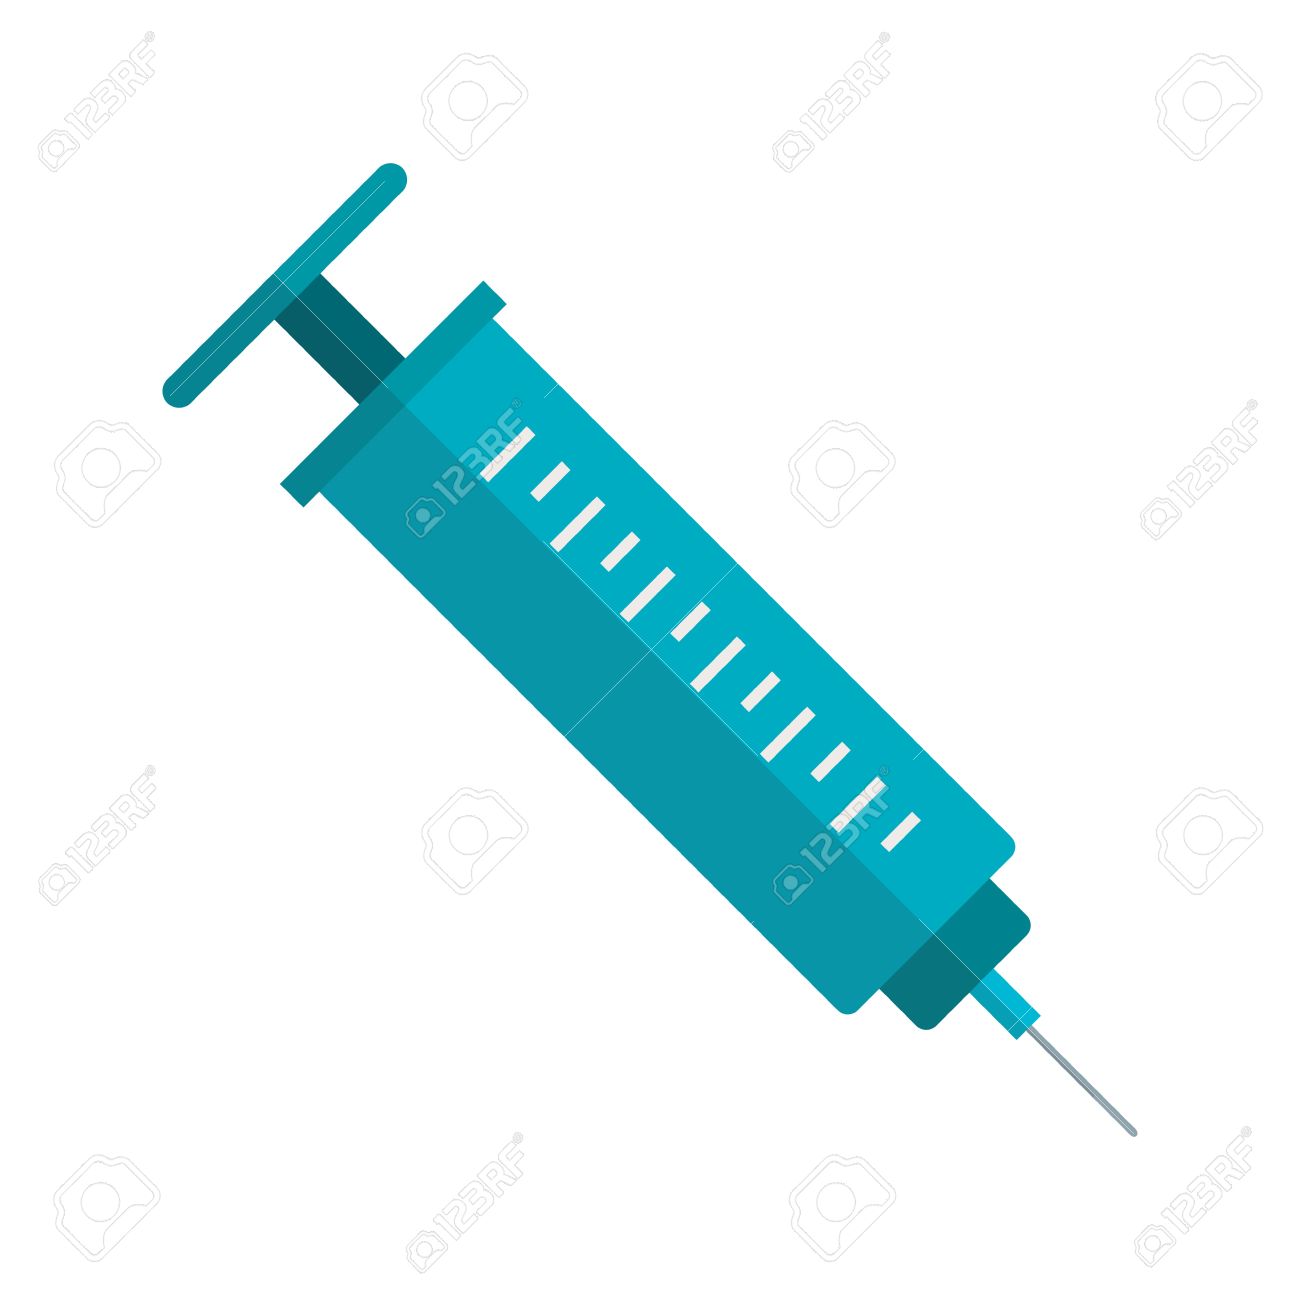 Cure, hypodermic syringe, inject, medical, medicine, syringe 